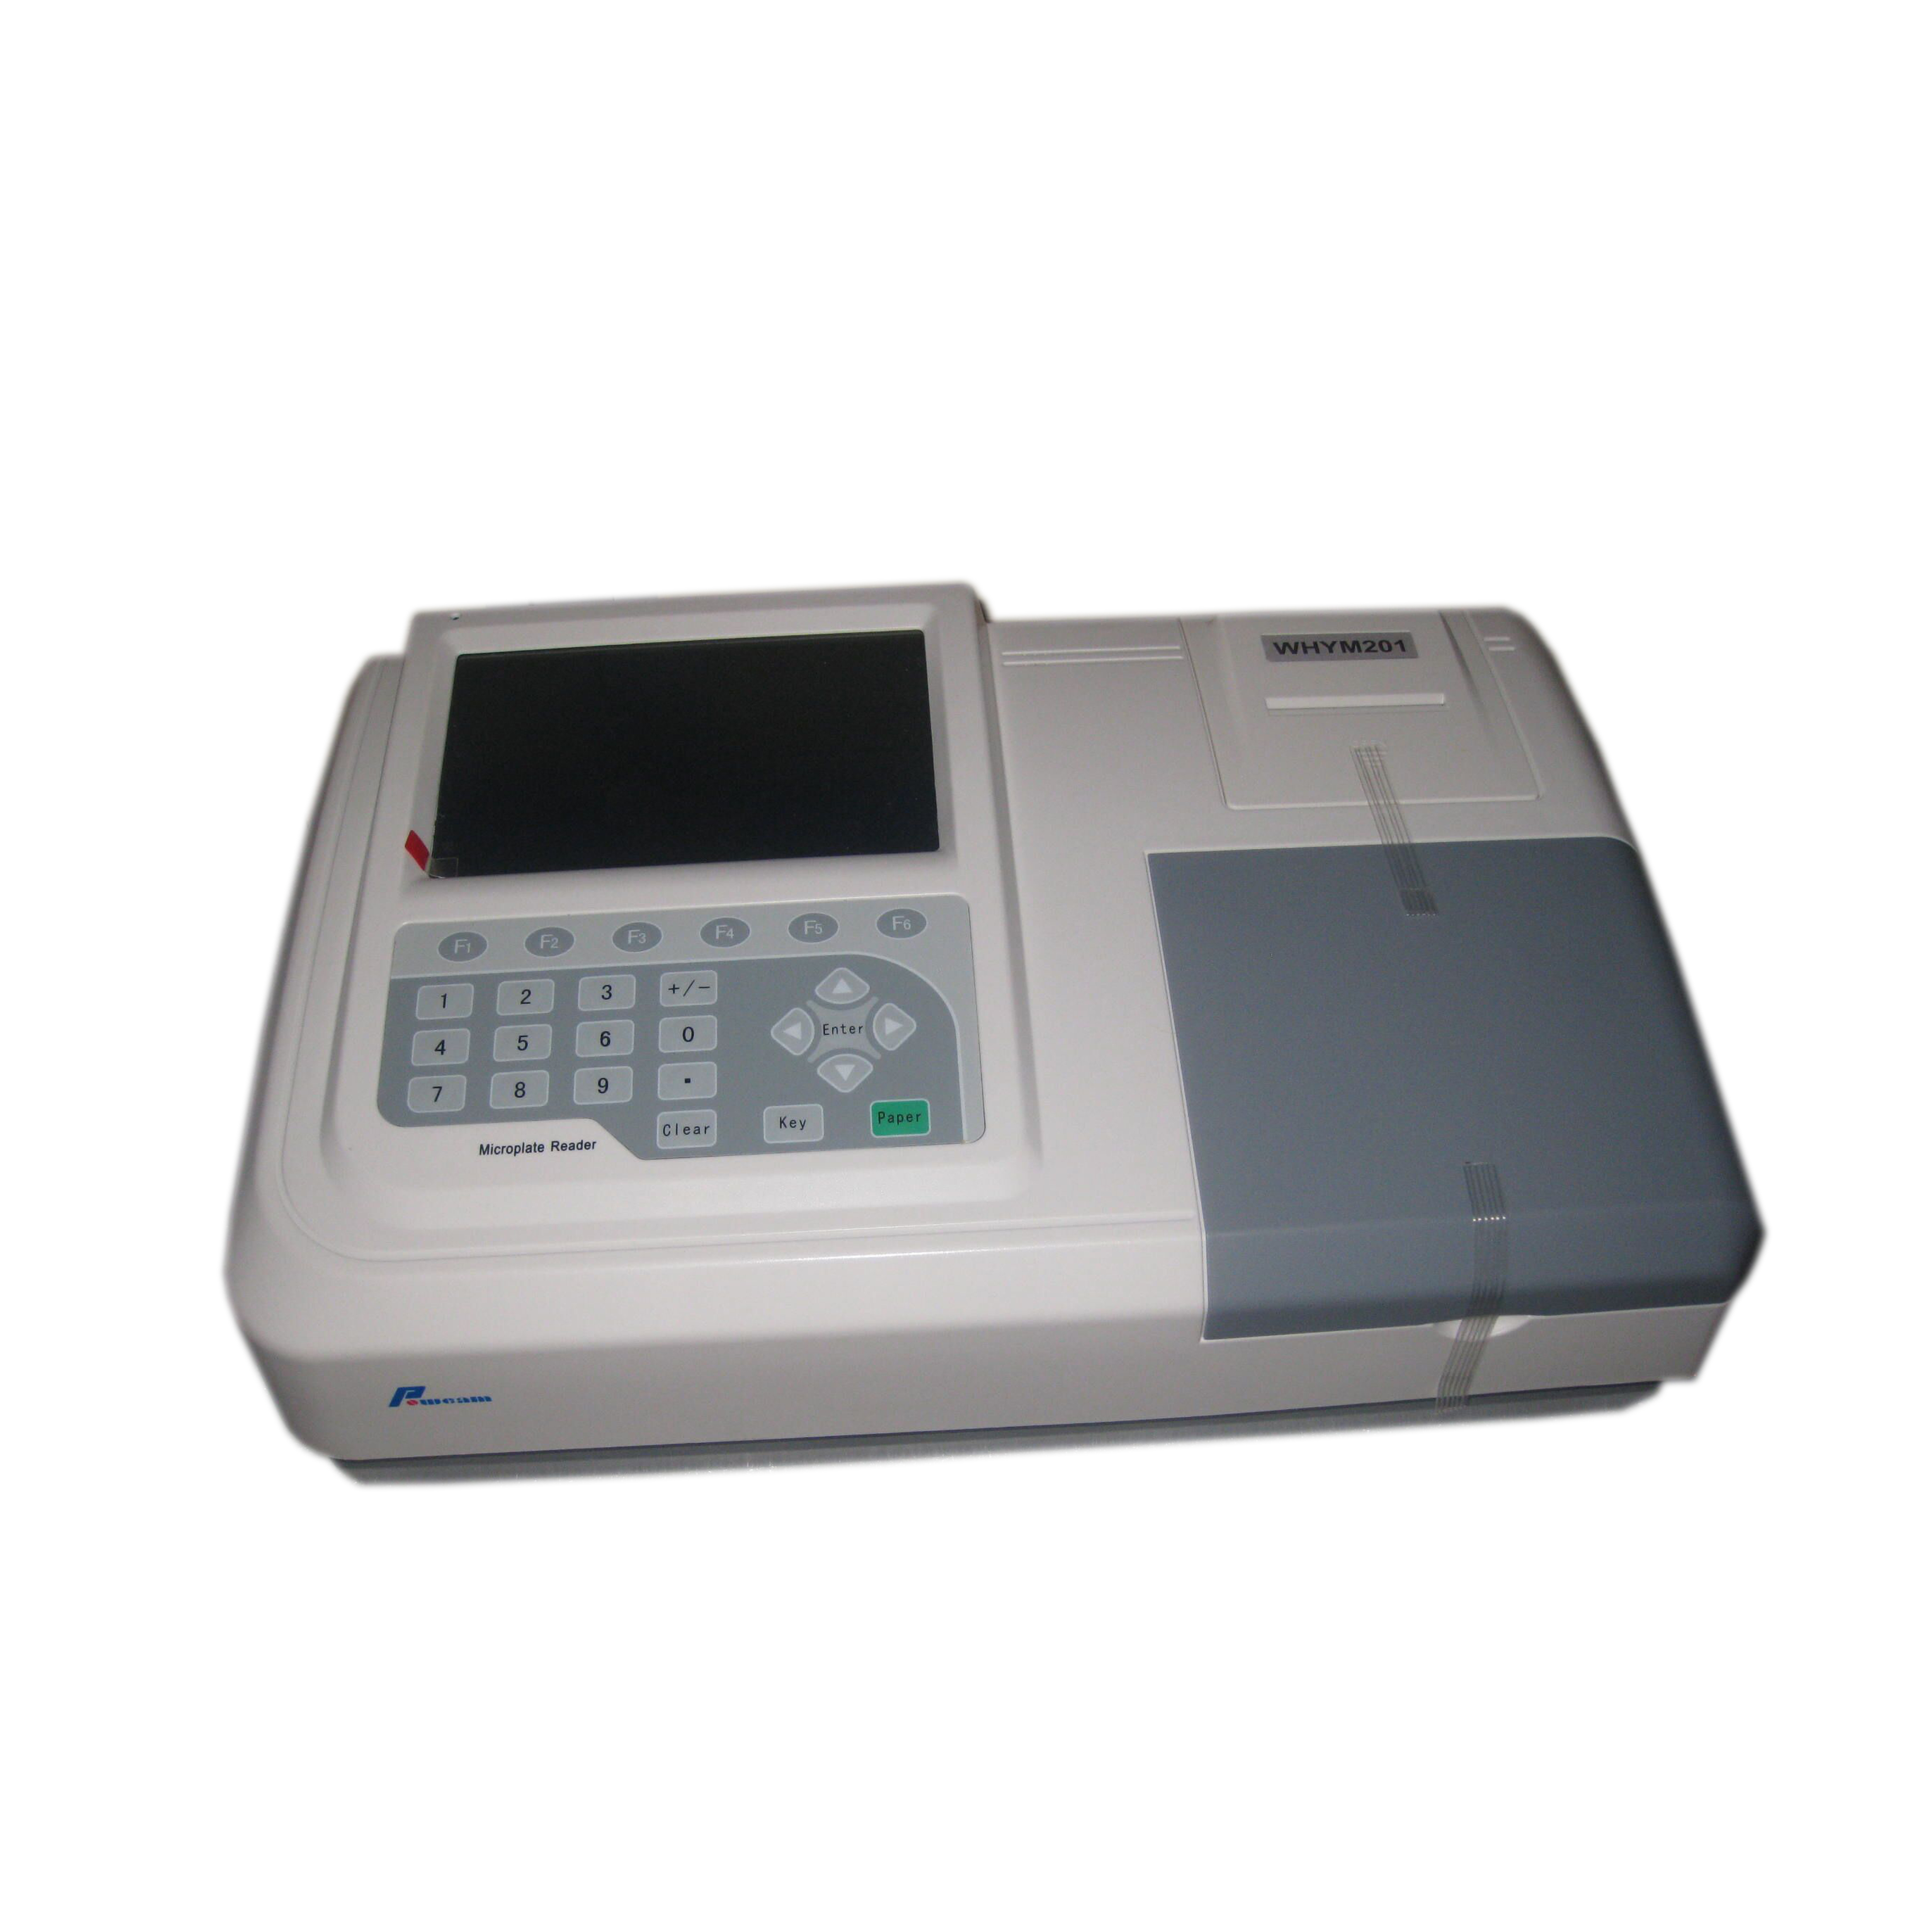 Laborausrüstung ELISA Microplat Reader (Whym201)